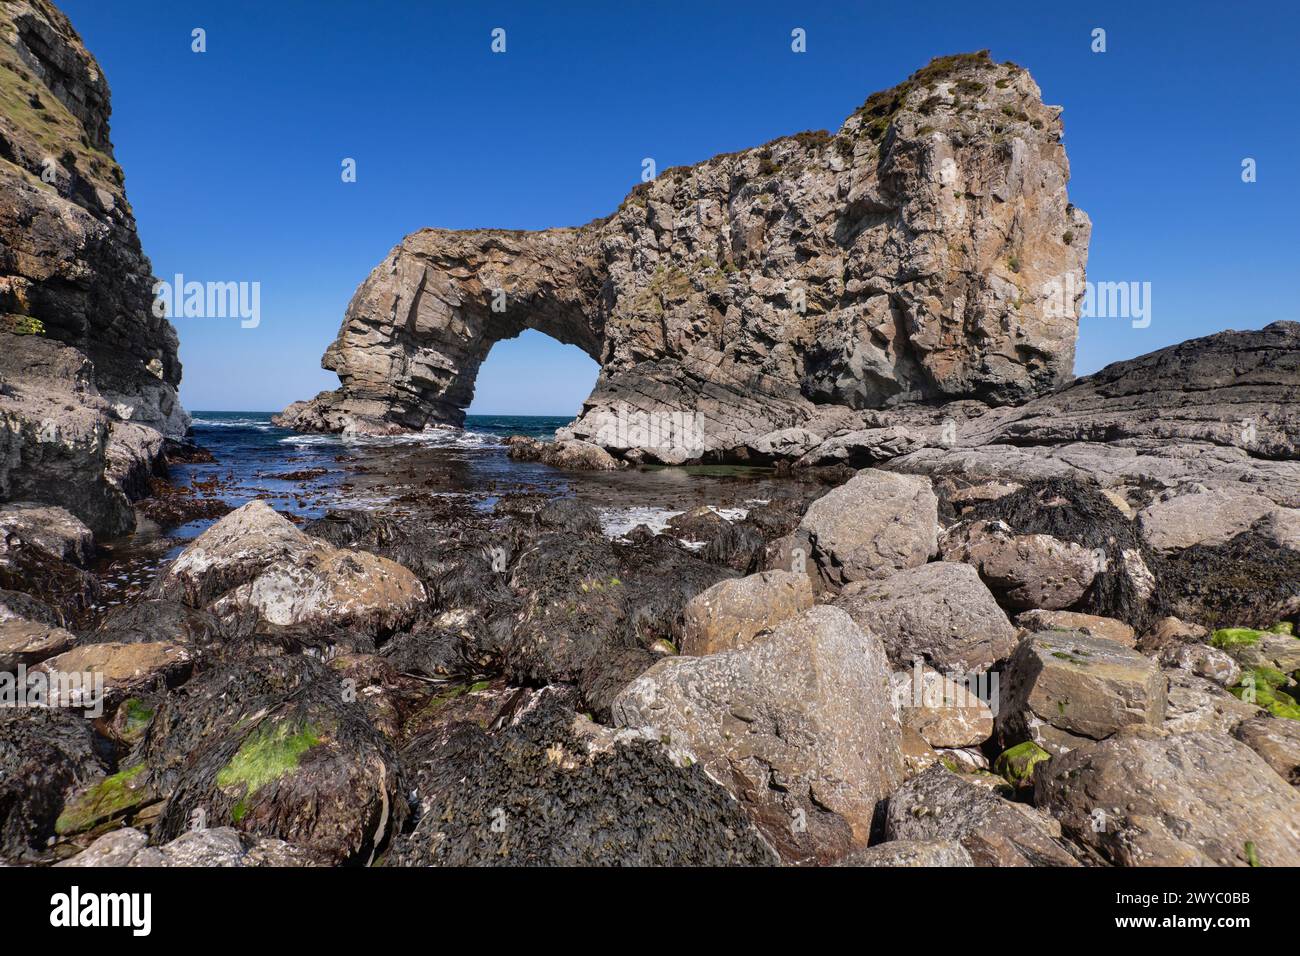 Repubblica d'Irlanda, Contea di Donegal, Penisola di Fanad, Great Pollet Arch, che è il più grande arco marino dell'isola d'Irlanda, con un'altezza di 150 metri. Foto Stock